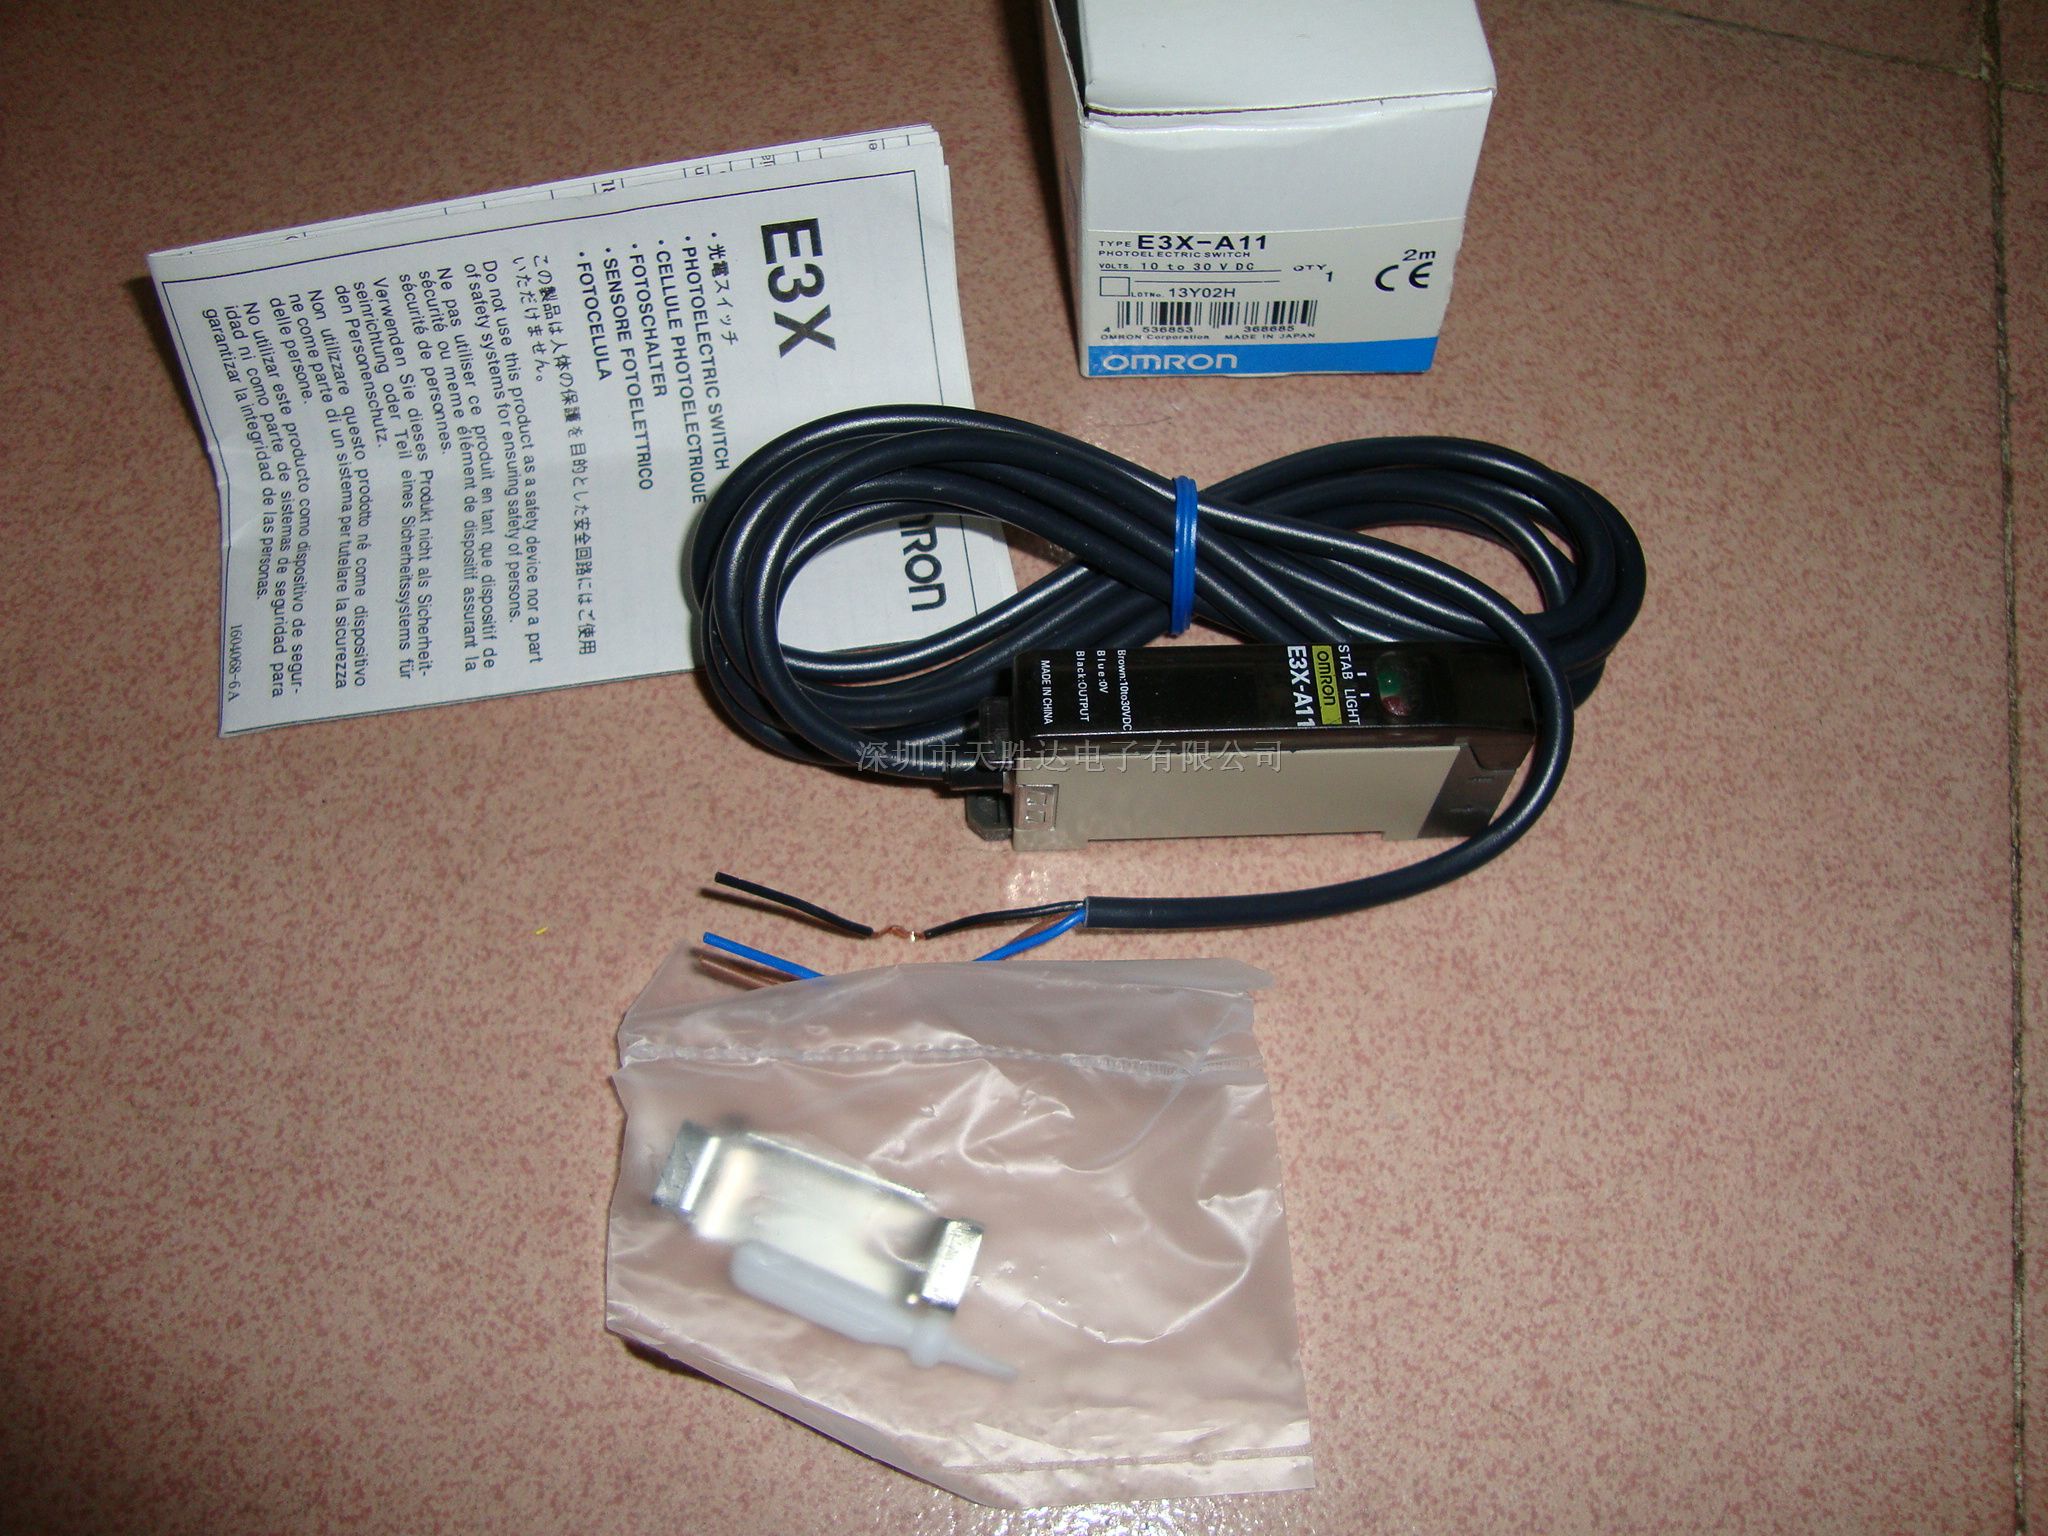 供应光纤传感器E3X-CE4、E3X-C*、E3X-A41